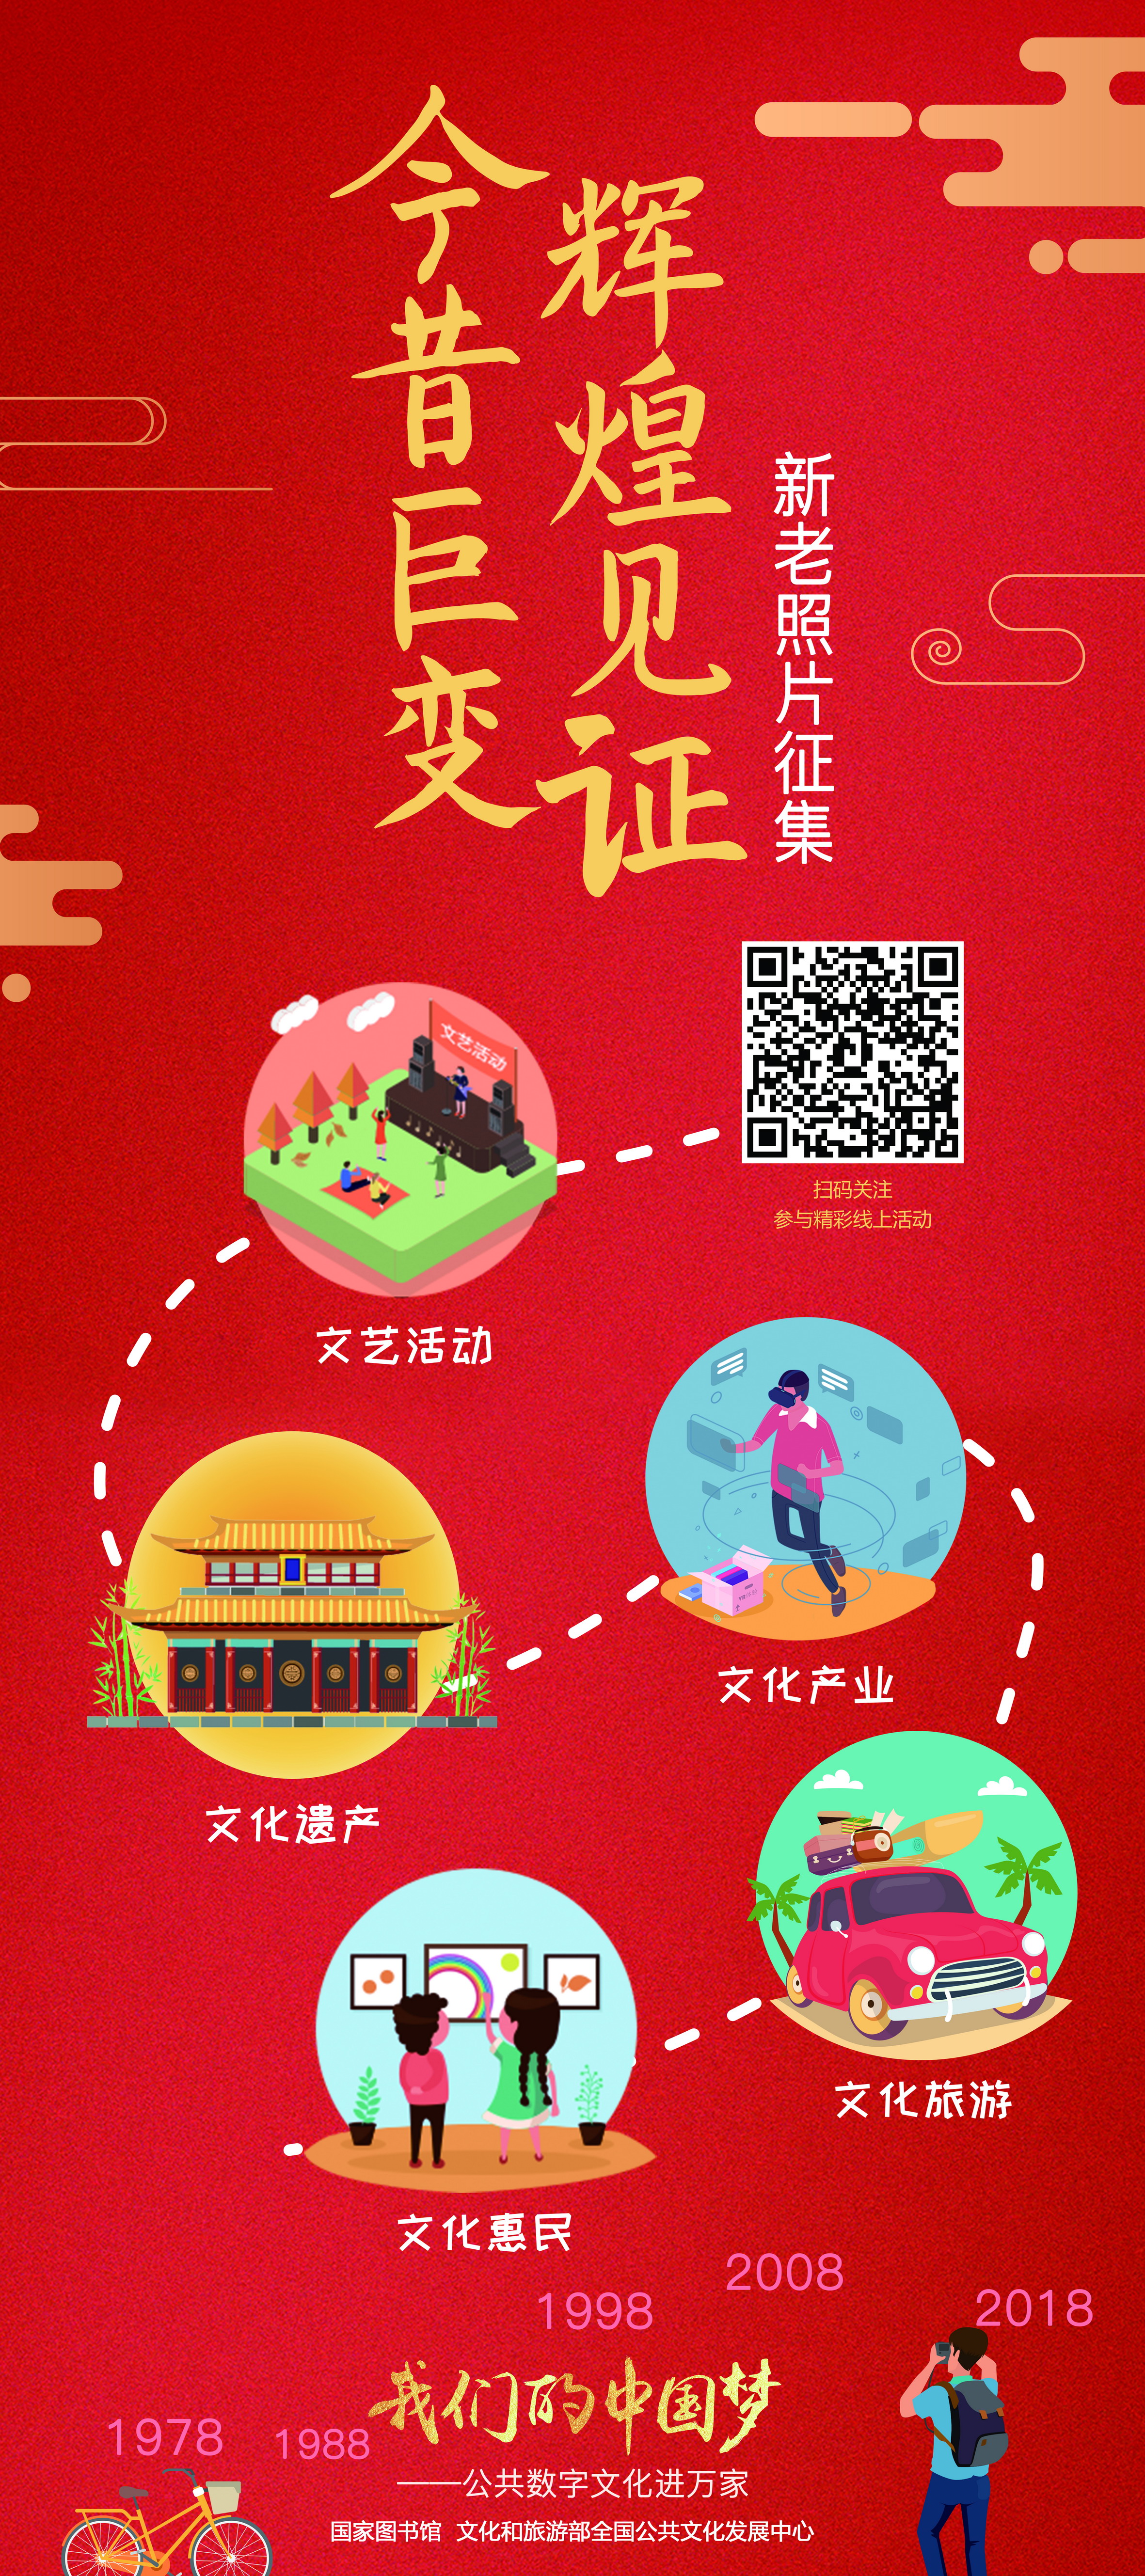 我们的中国梦——公共数字文化进万家活动线下主题展览_图1